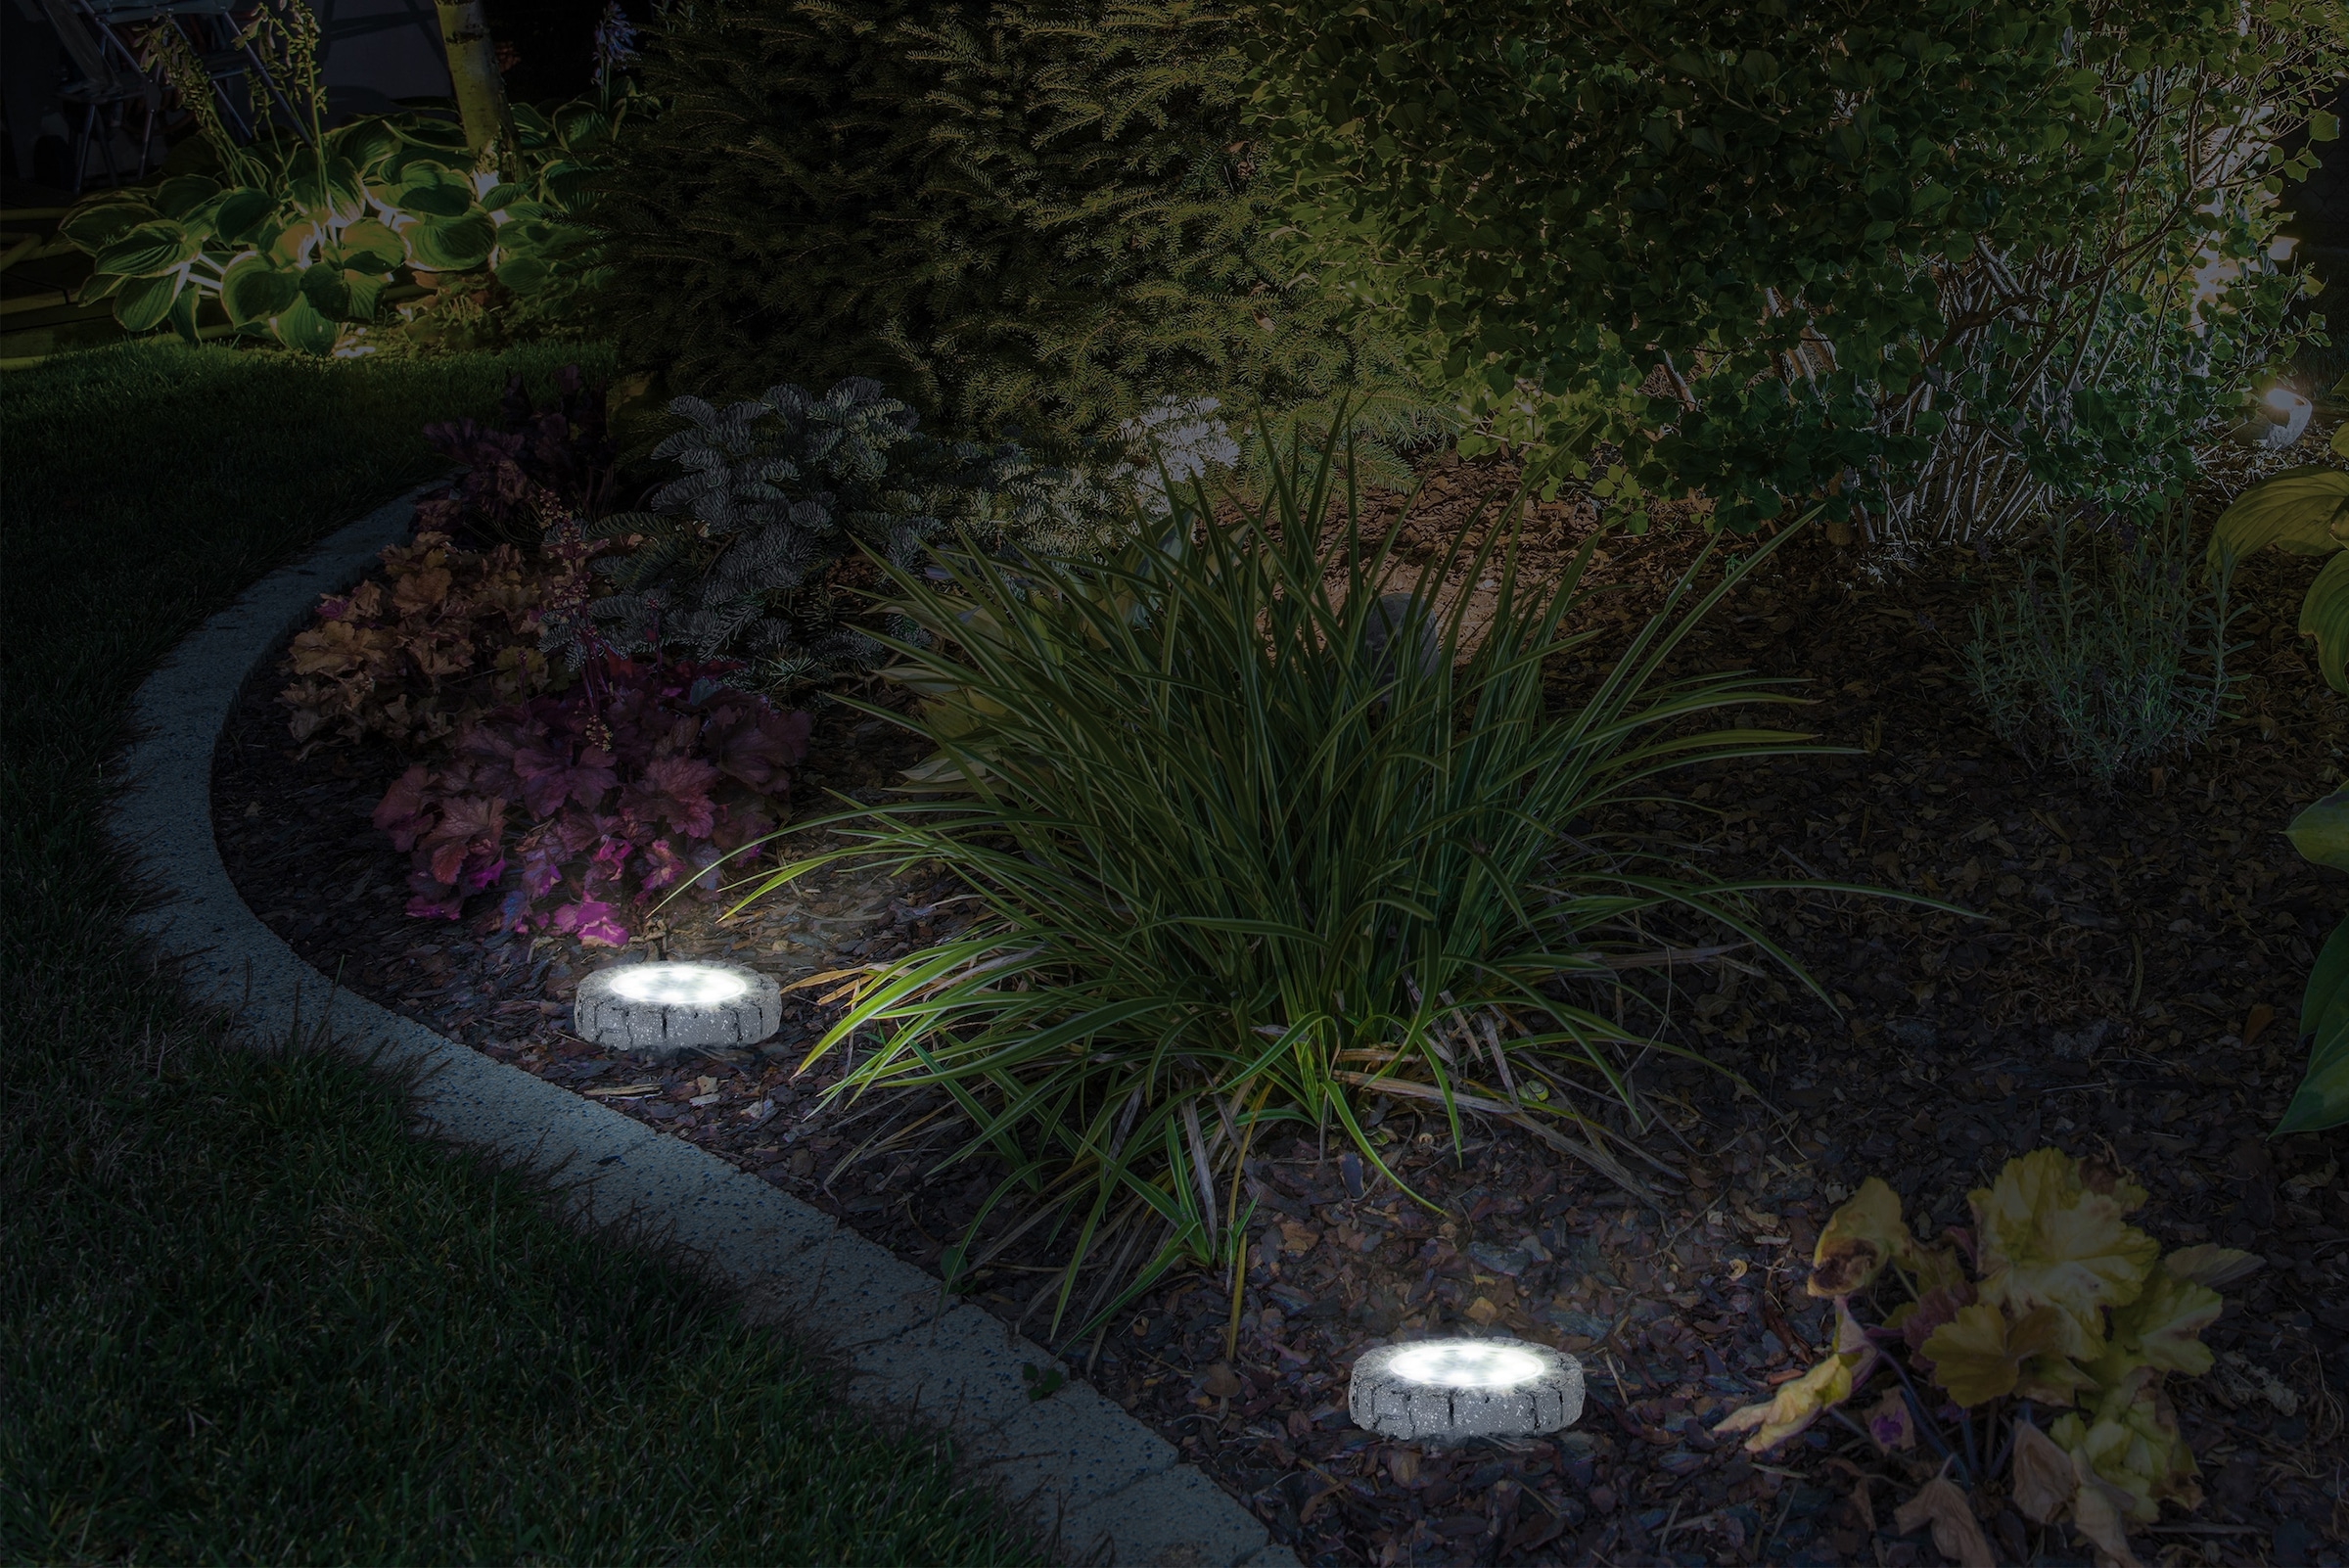 näve LED Gartenleuchte »Kian«, Leuchtmittel LED-Modul | LED fest integriert, LED Solar-Boden-Erdspieß, 6er Set